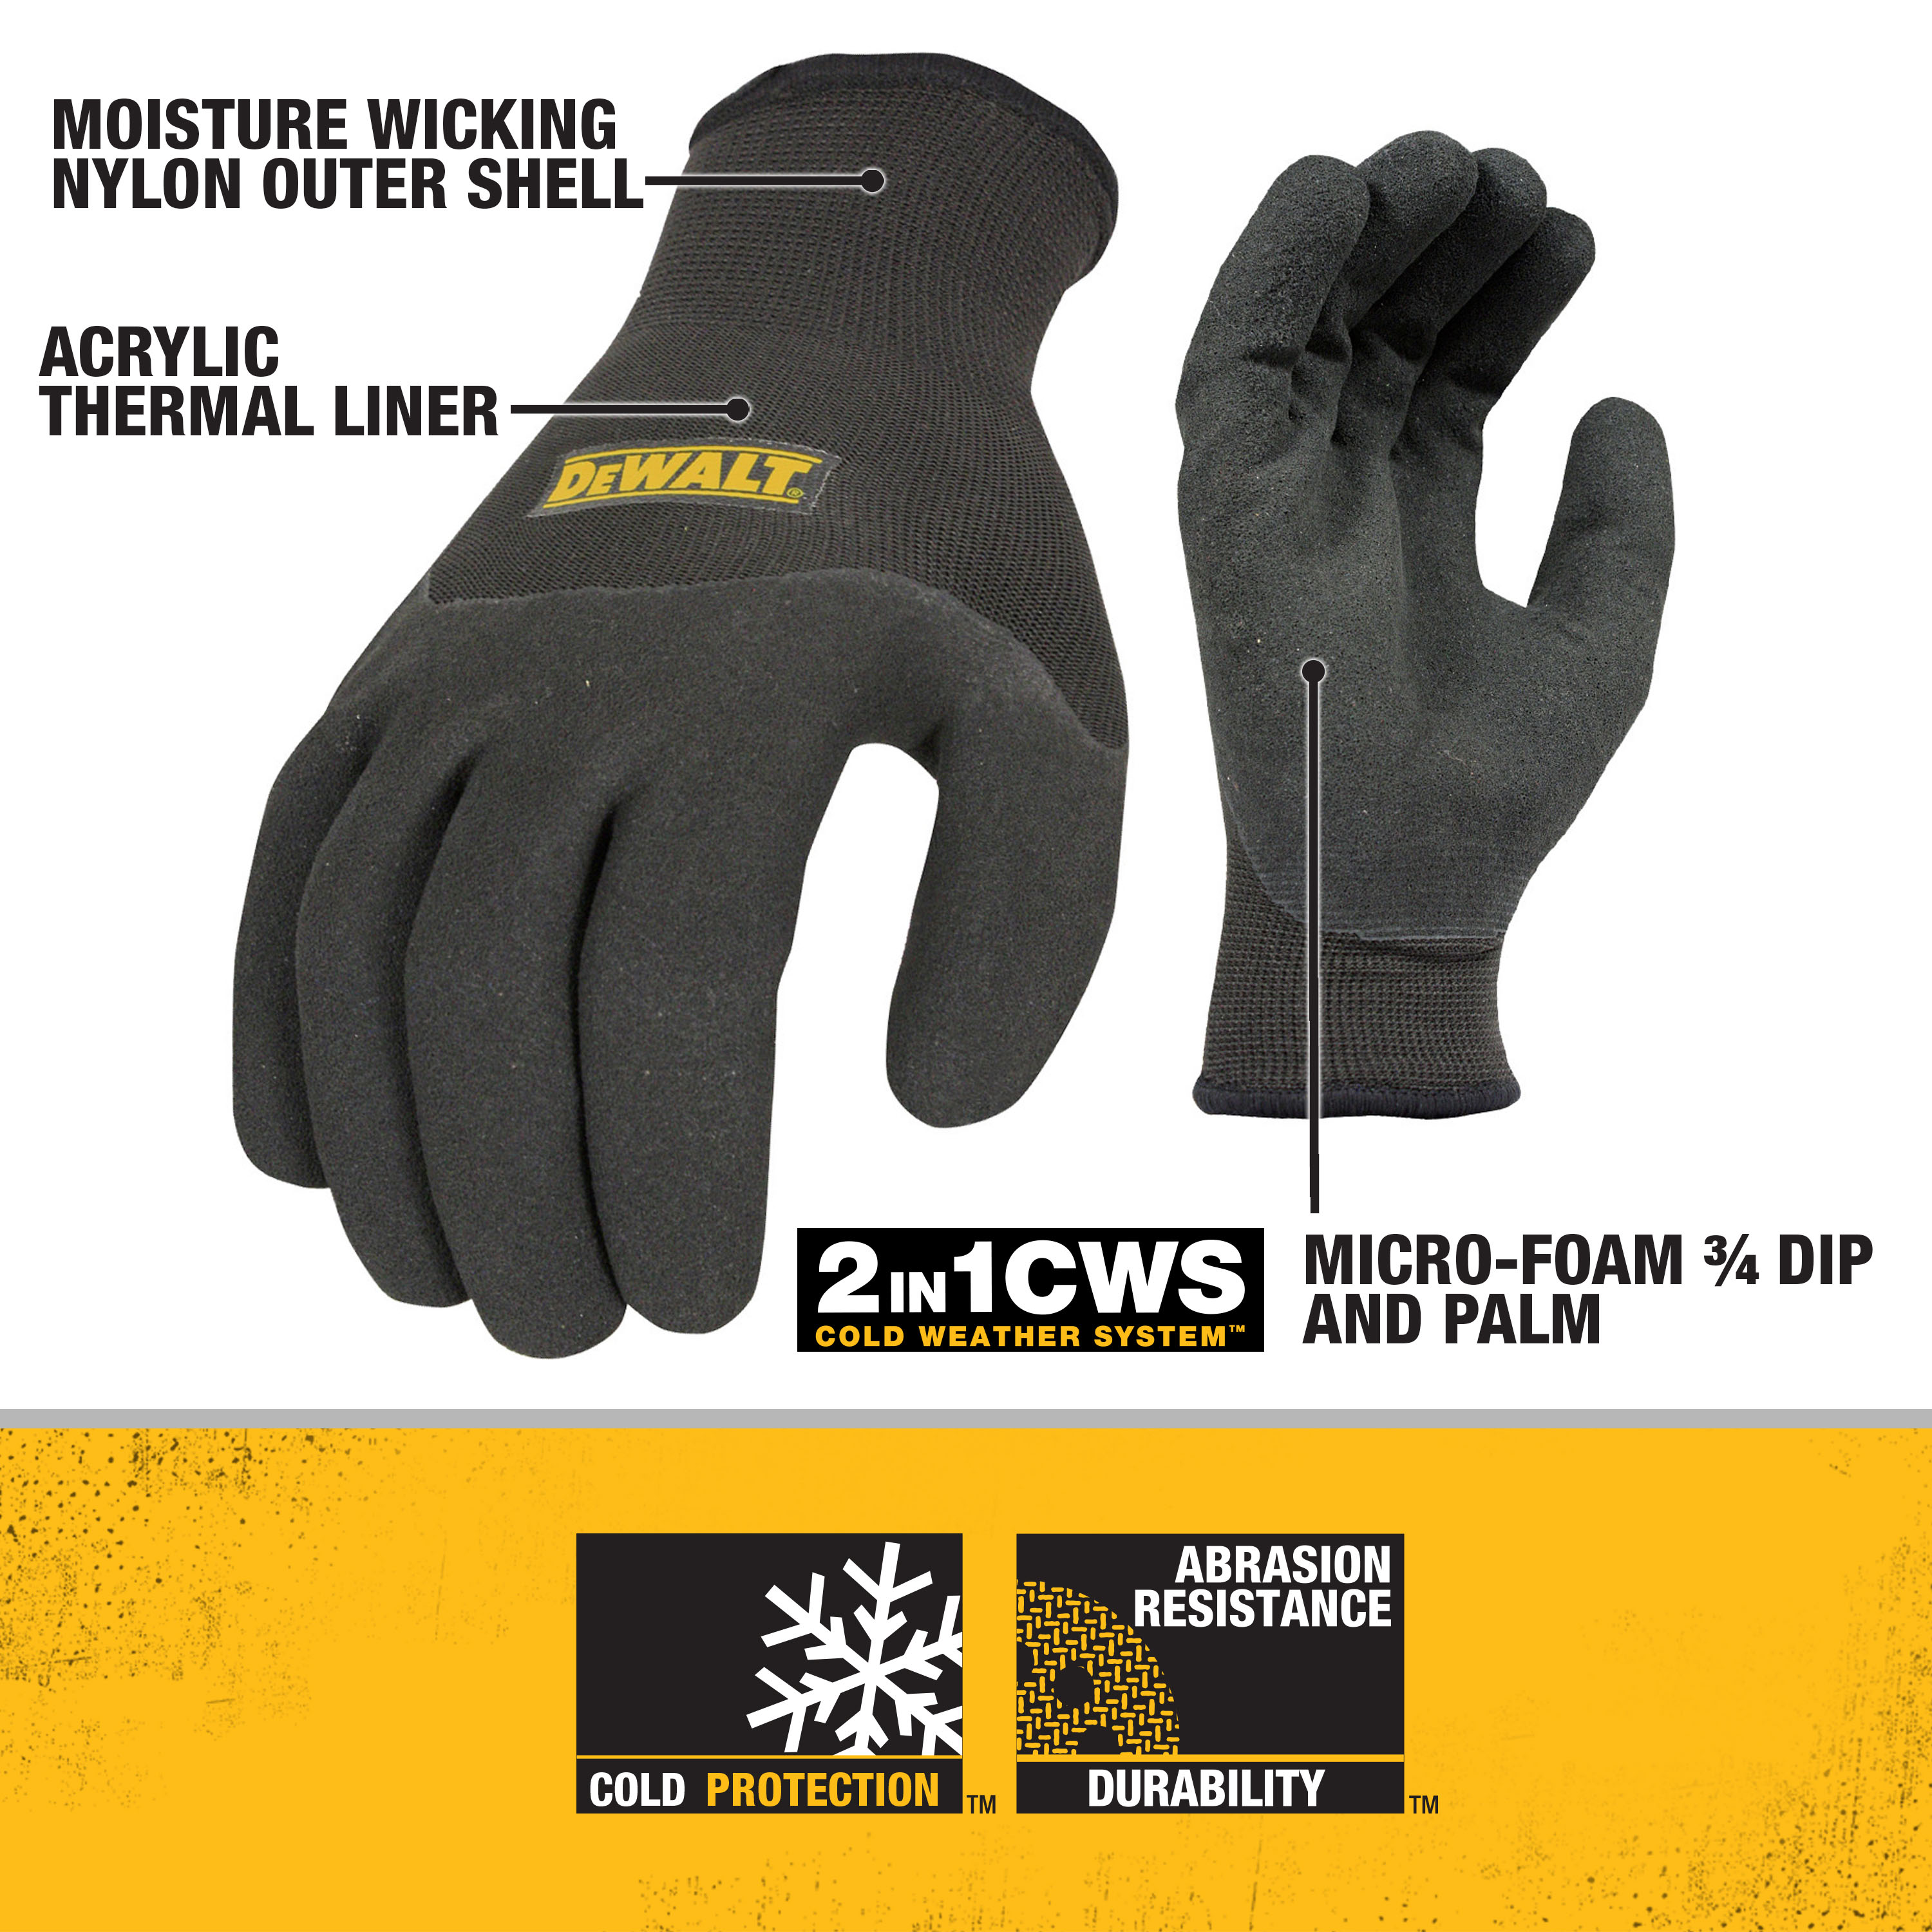 DeWalt Glove in Glove Thermal Work Glove Medium - 3